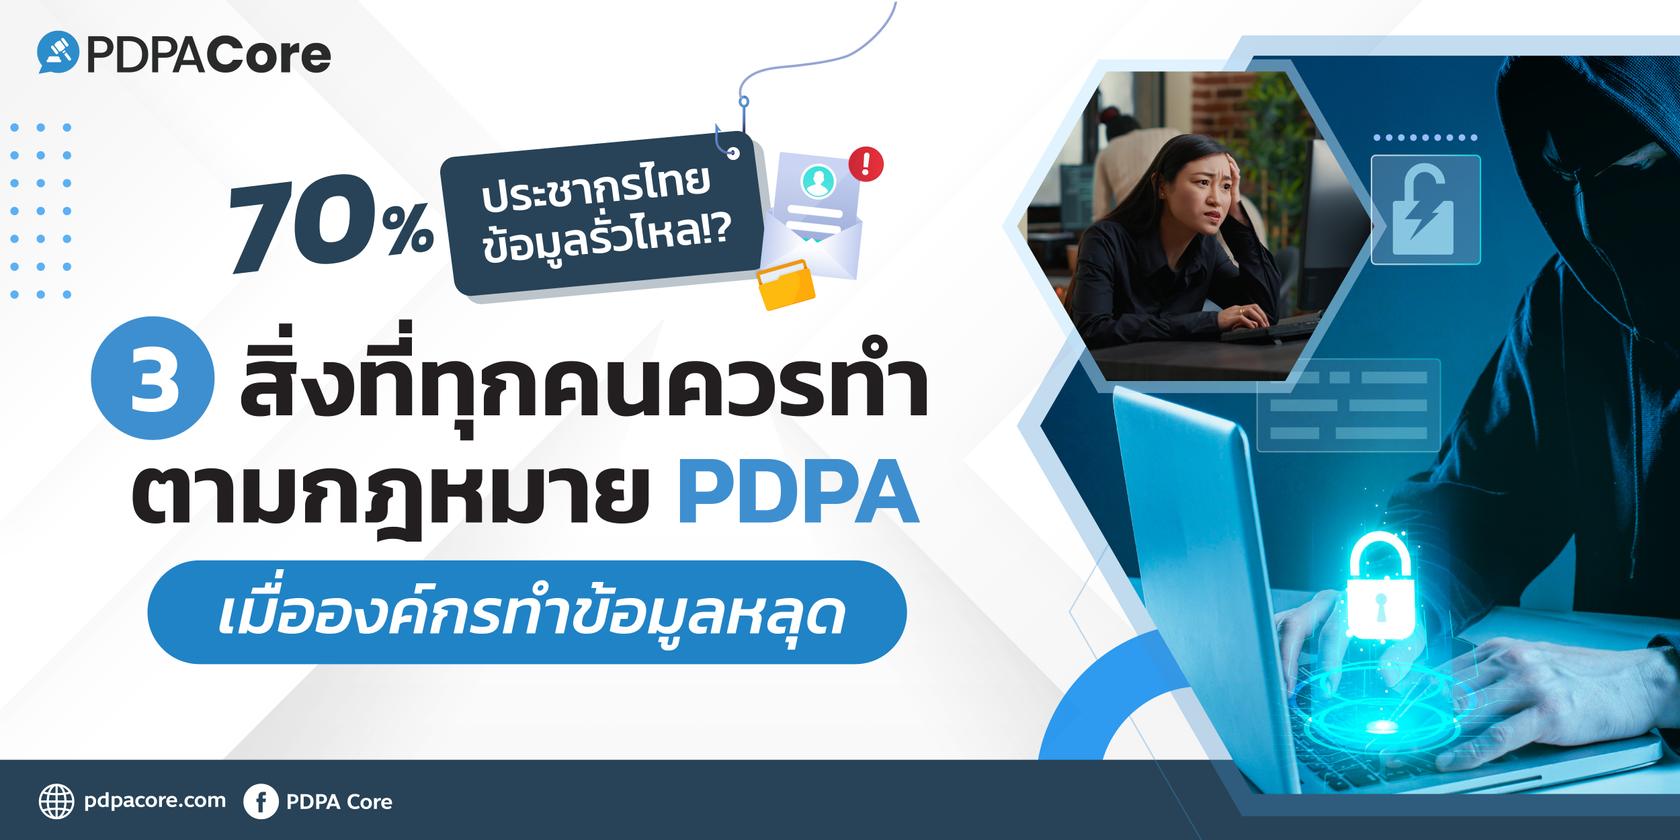 70% ประชากรไทย ข้อมูลรั่วไหล!? 3 สิ่งที่ทุกคนควรทำตามกฎหมาย PDPA เมื่อองค์กรทำข้อมูลหลุด 